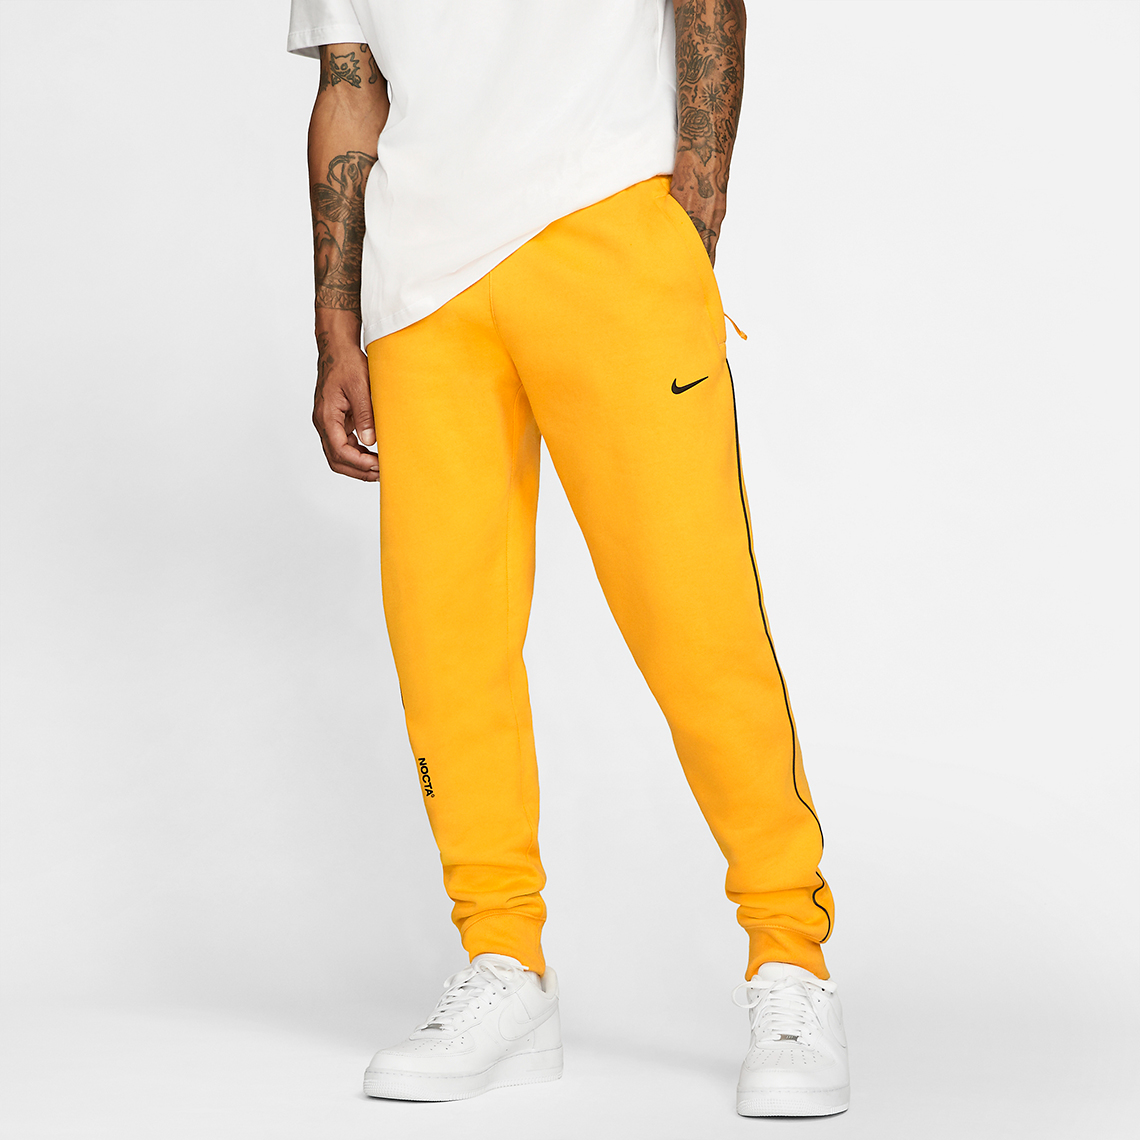 Drake Nike Nocta Pants Yellow Da3935 739 1